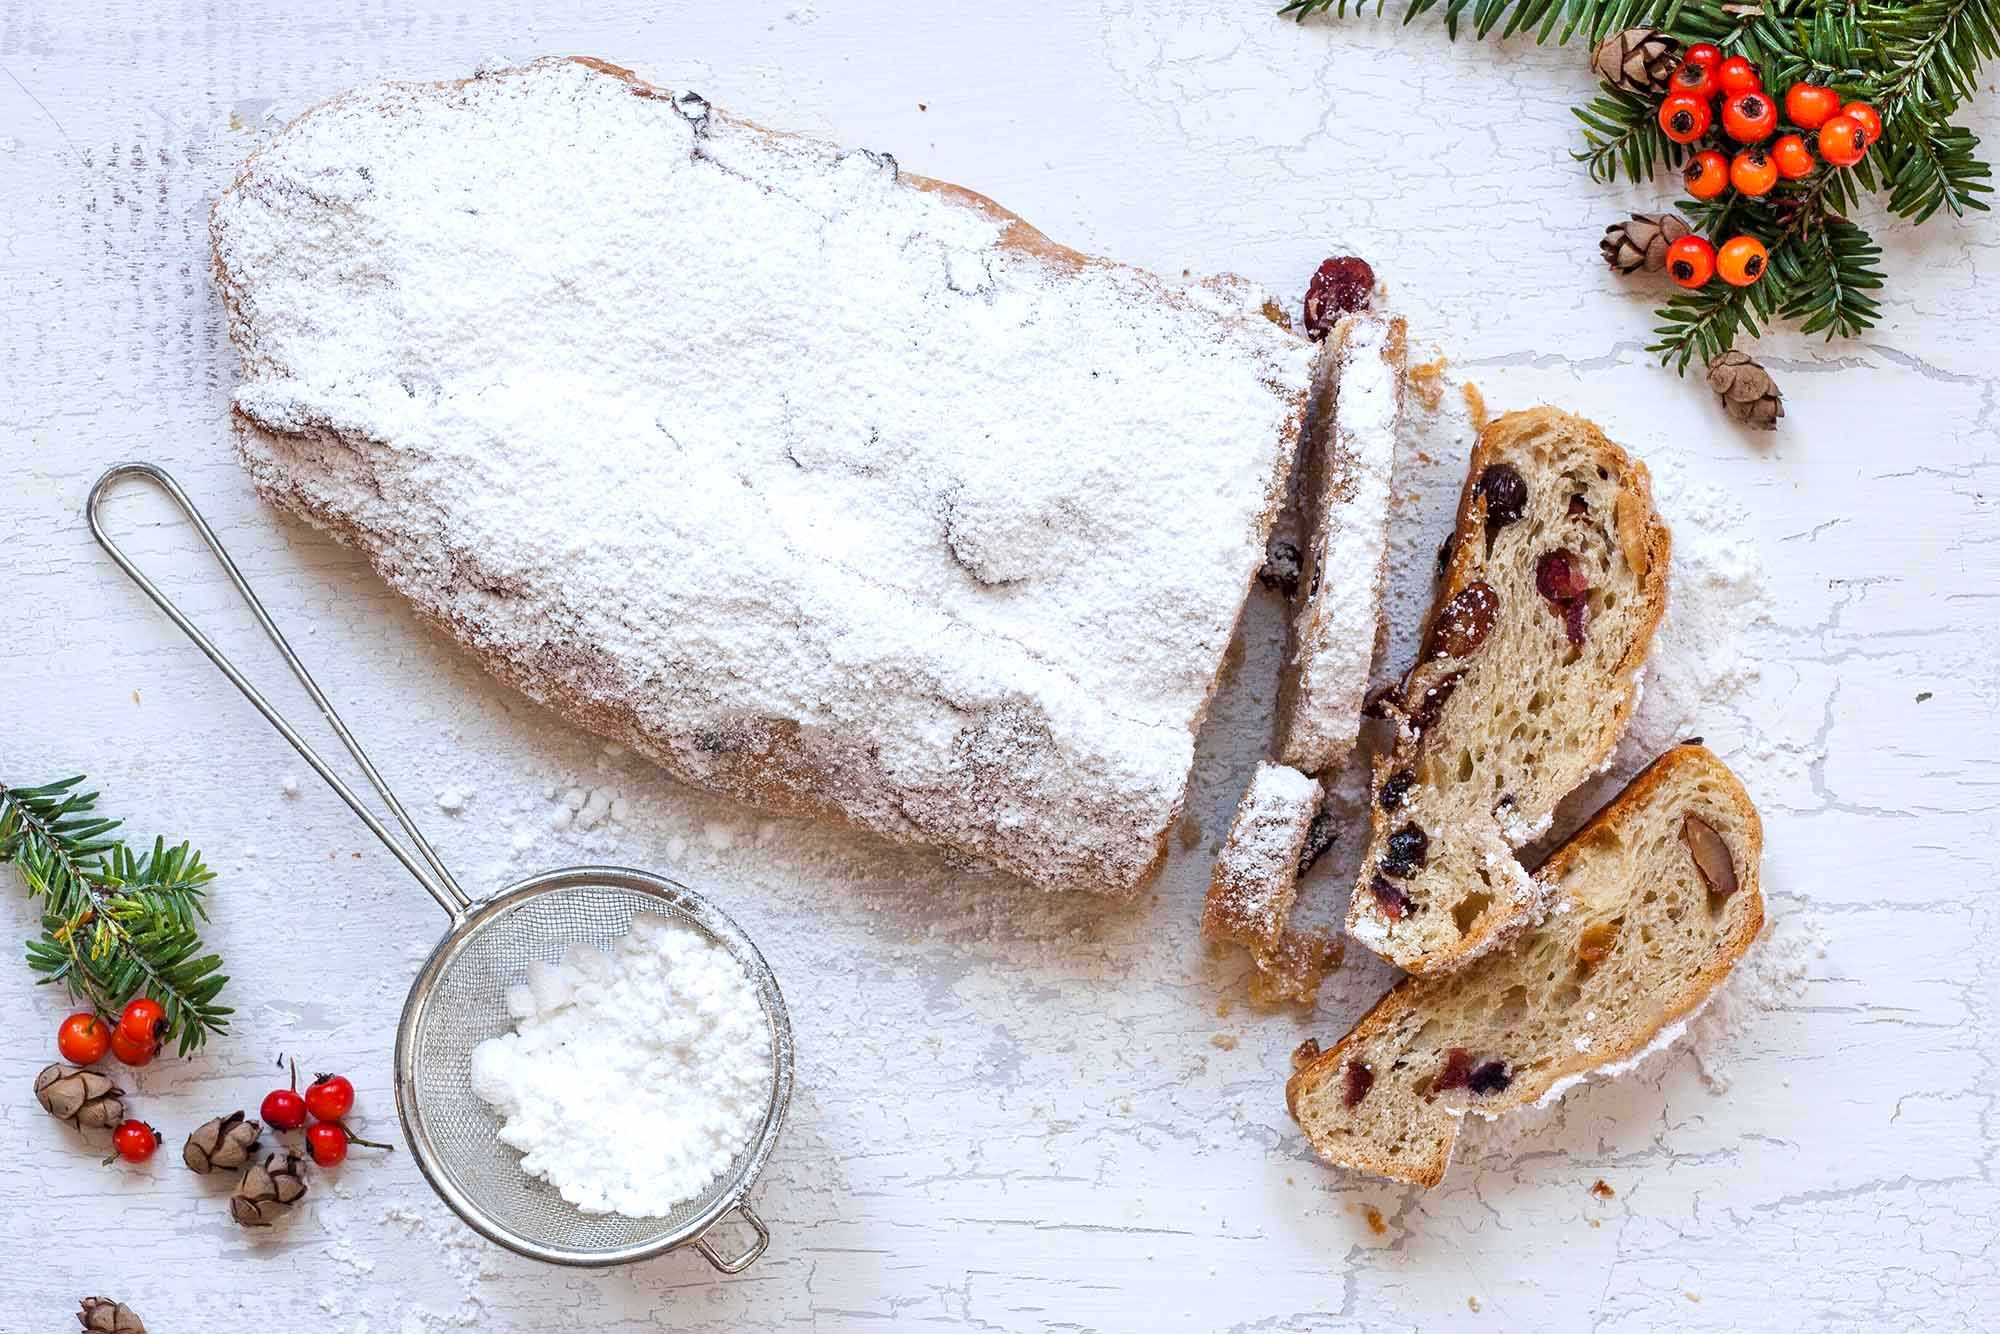 Рецепт штоллена на Рождество: готовим немецкий кекс дома